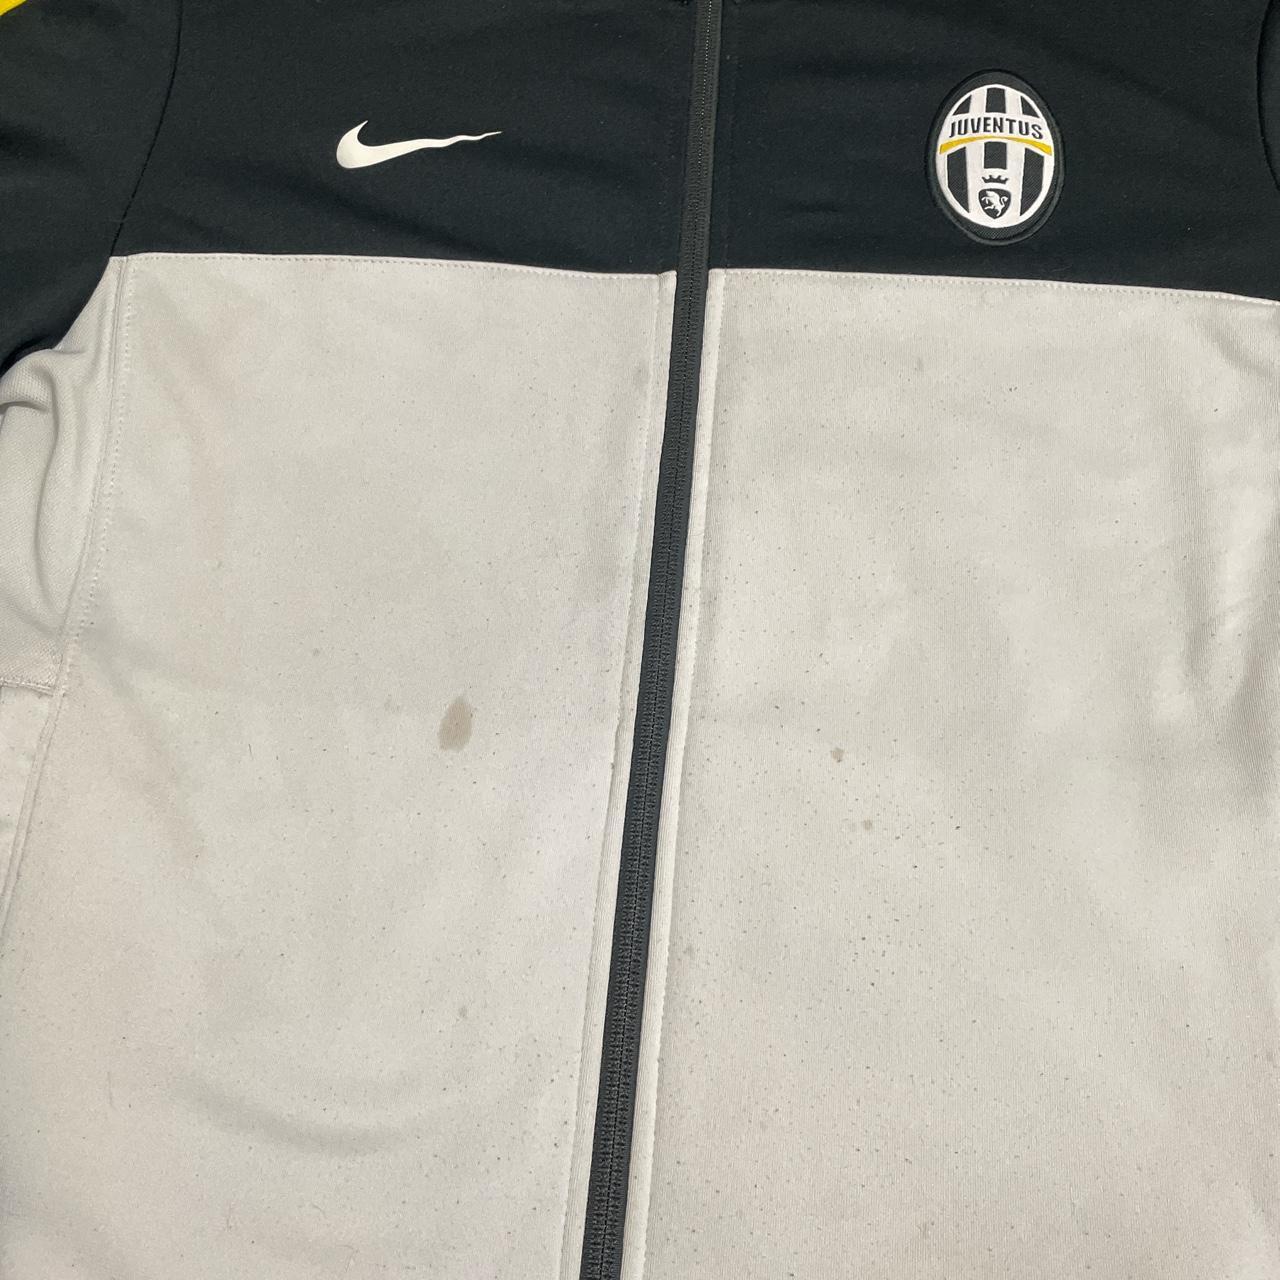 Juventus Nike Training Jacket